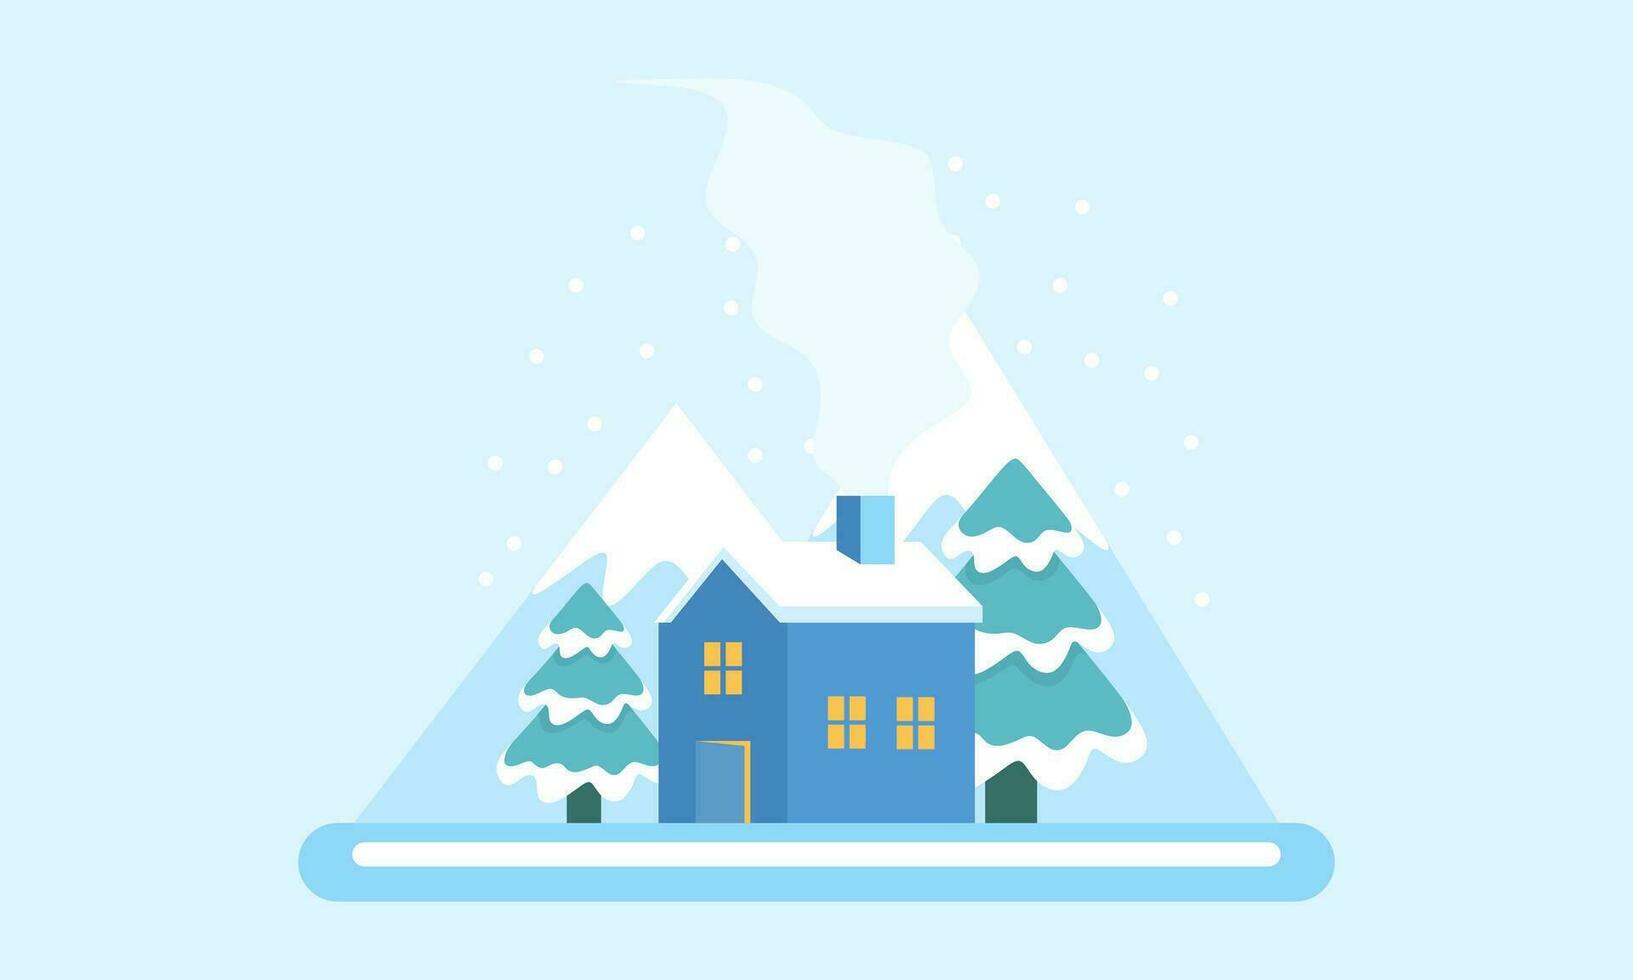 söt vinter- landskap. vinter- baner. härlig hus i en snöig dal. horisontell landskap. vinter- stuga illustration vektor